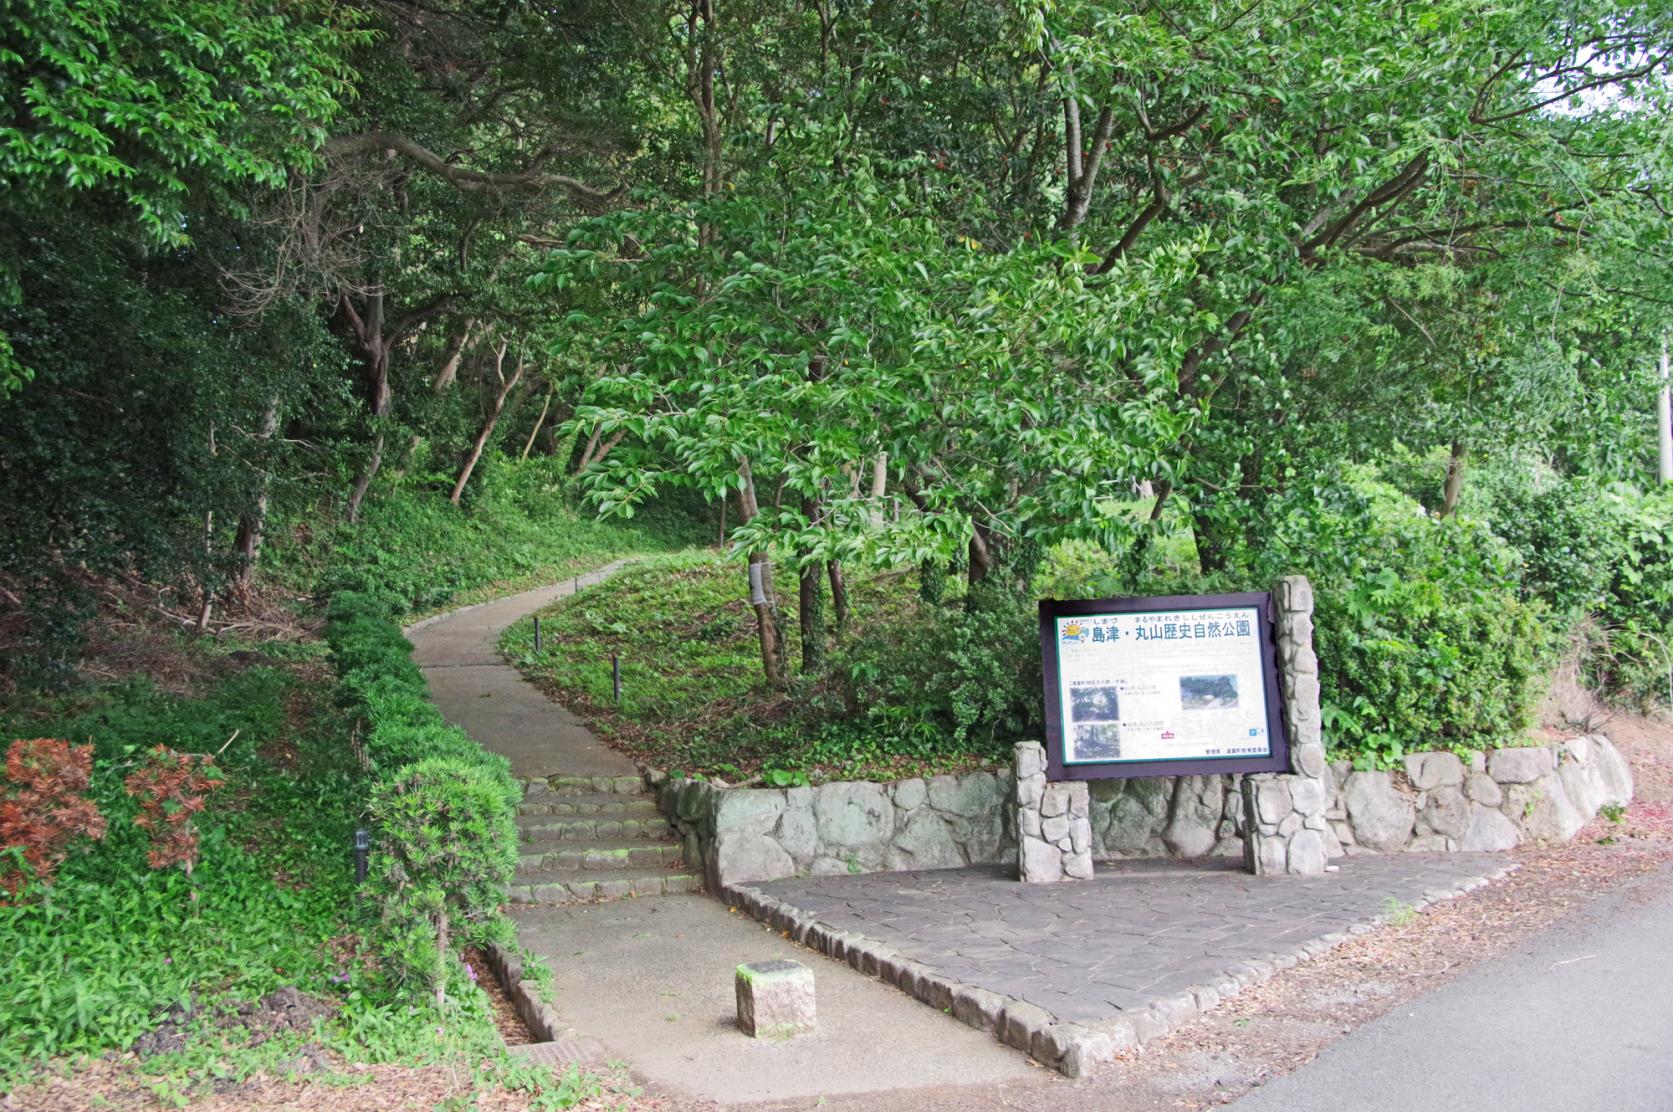 远贺町 岛津、丸山历史自然公园-0